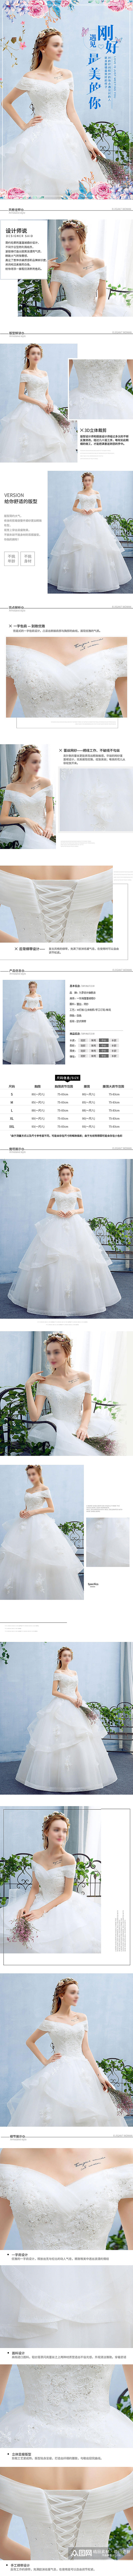 白色蕾丝V领婚纱礼服素材